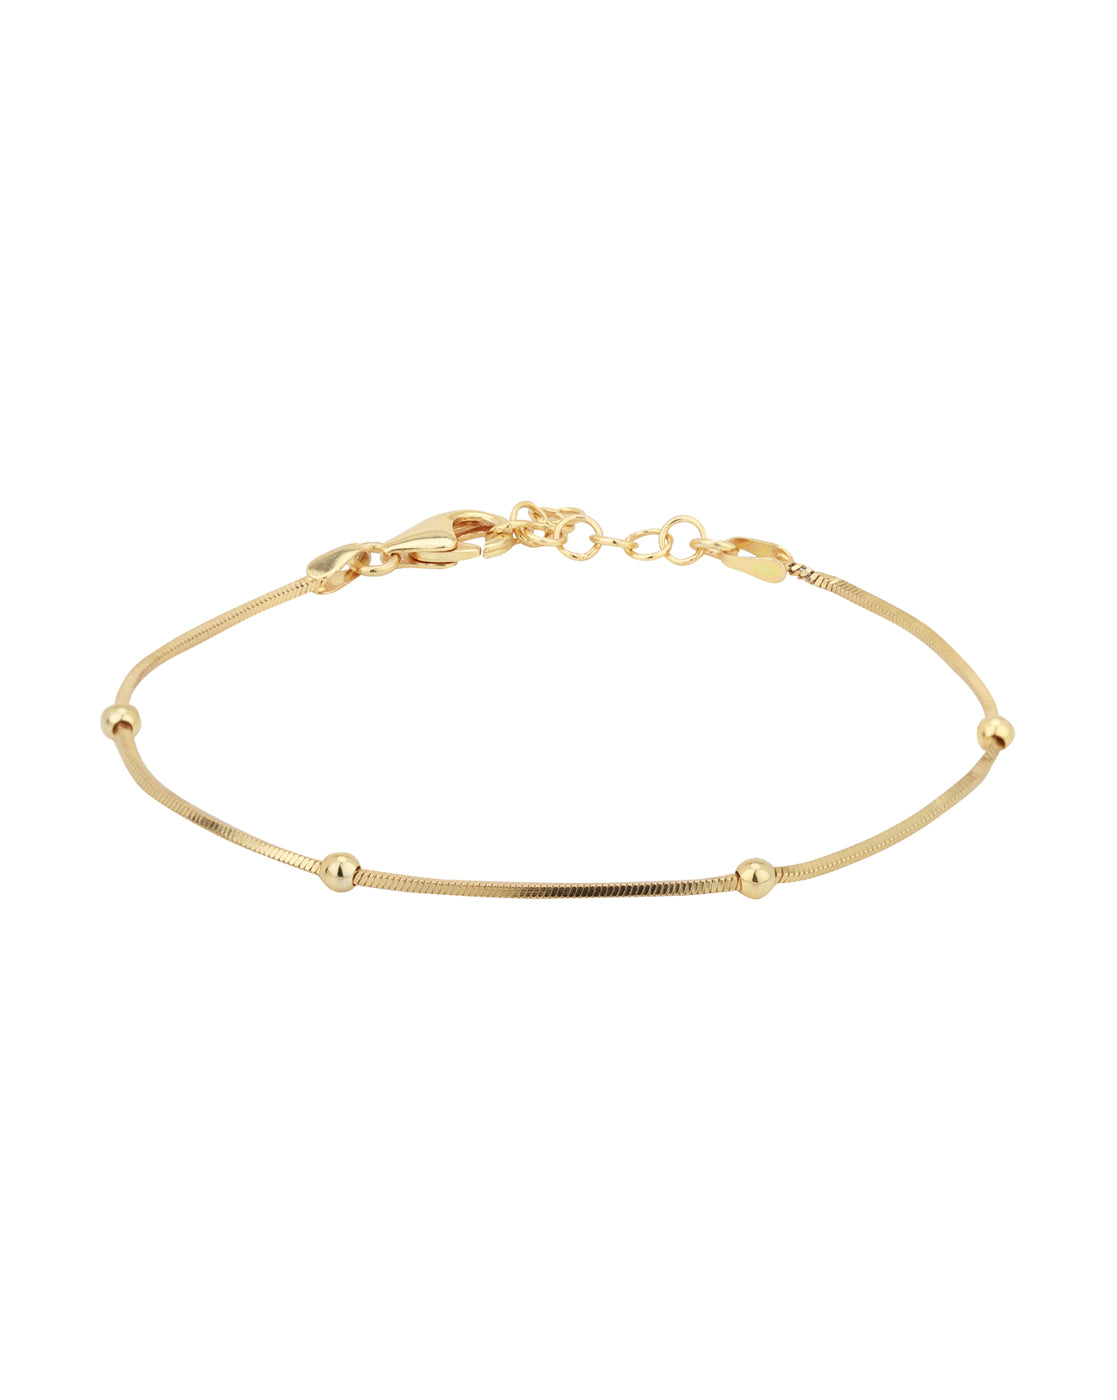 Gradient wrap Bracelet - Didi Jewelry Project